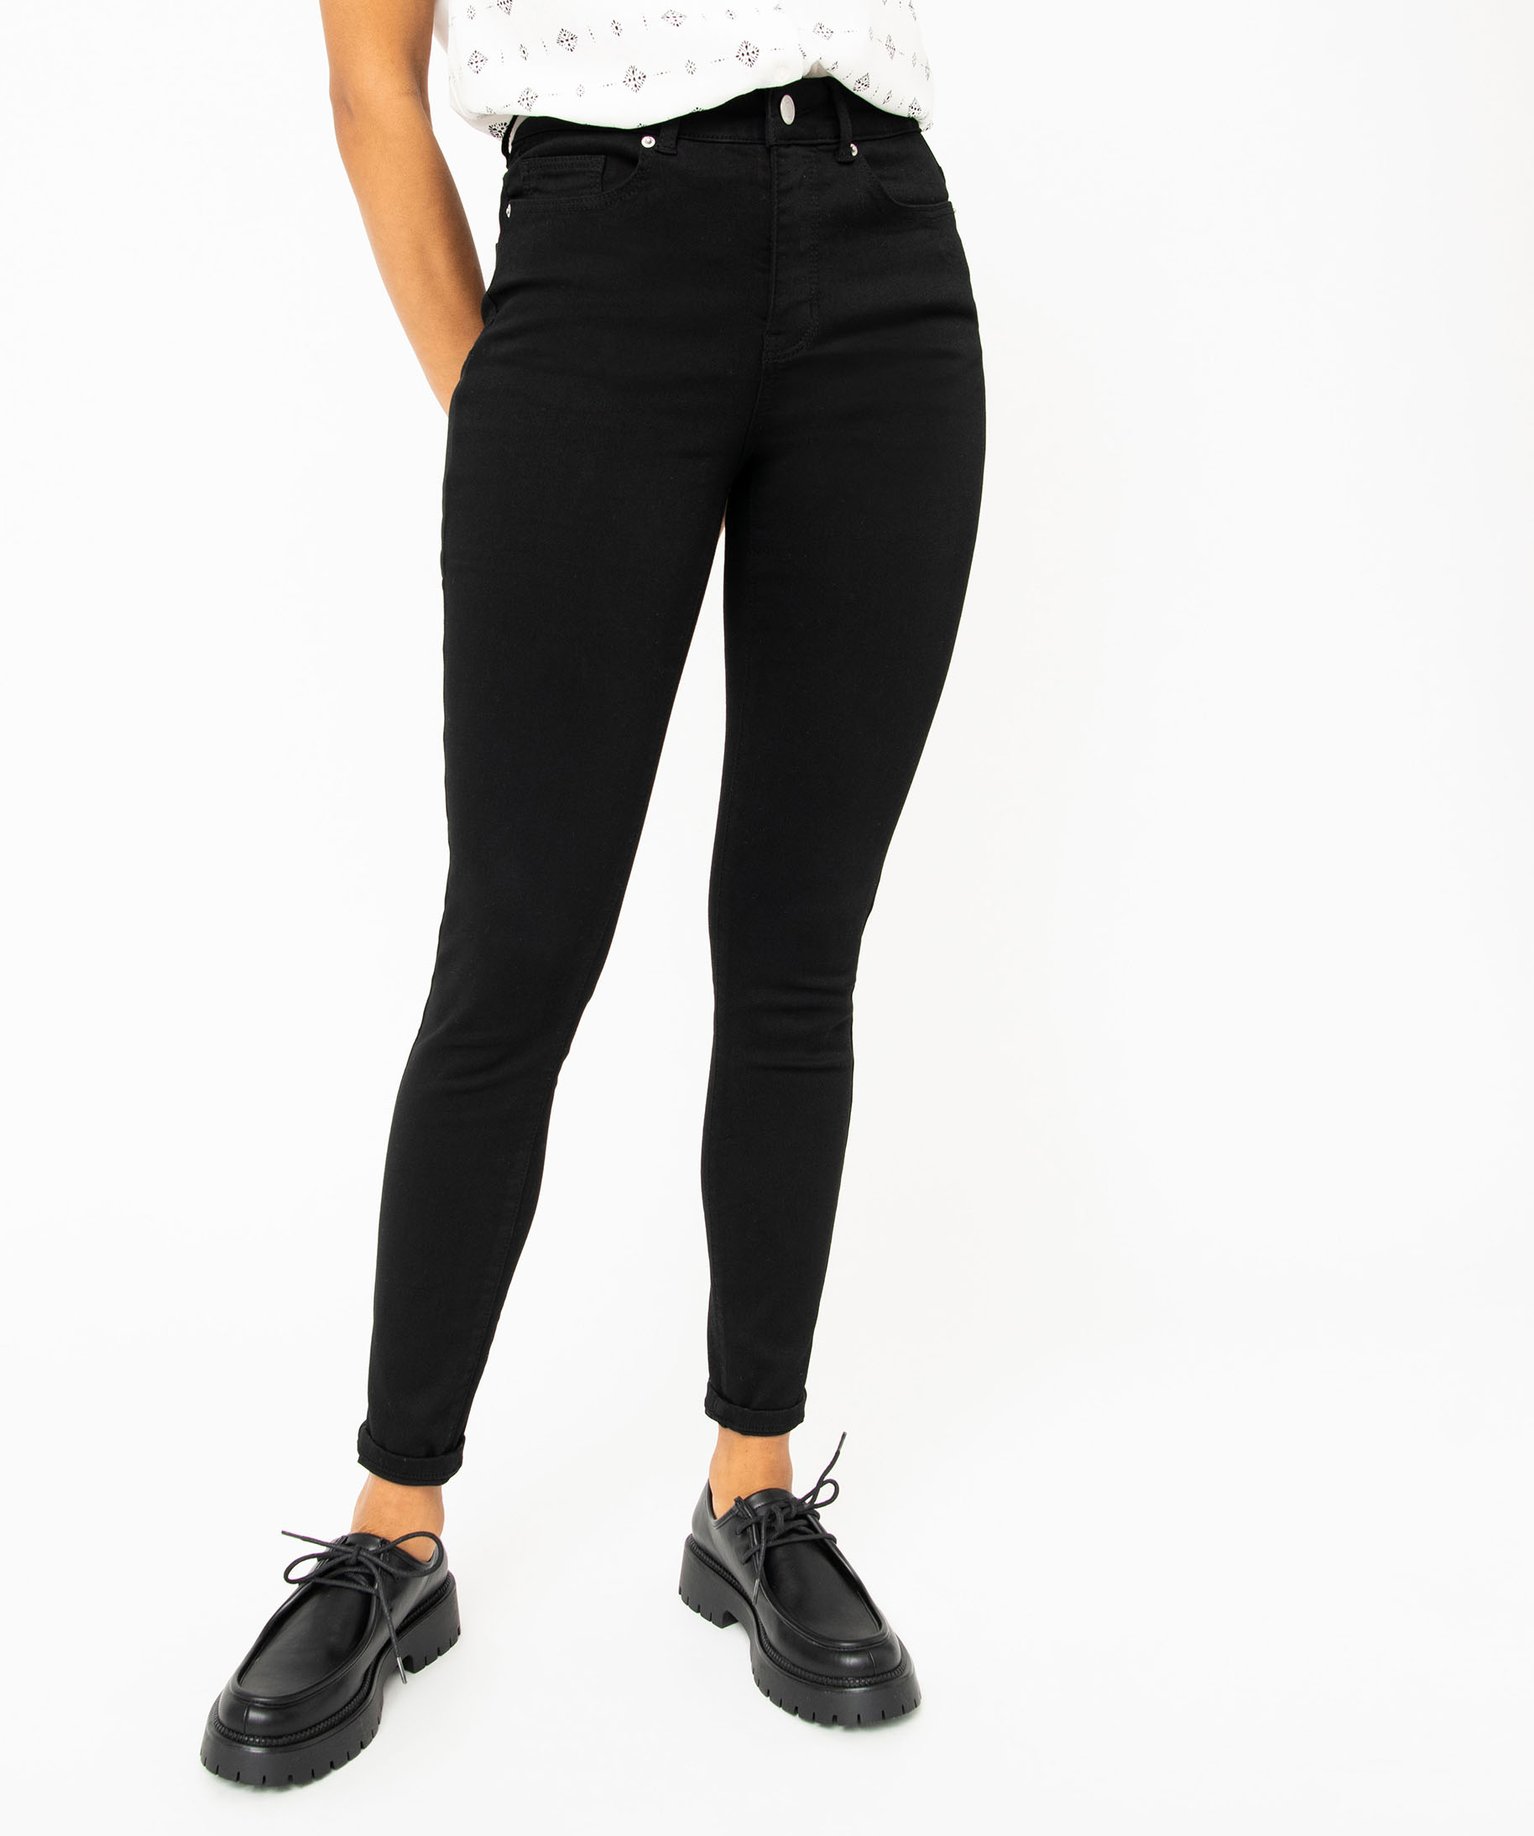 jean skinny taille haute stretch femme noir